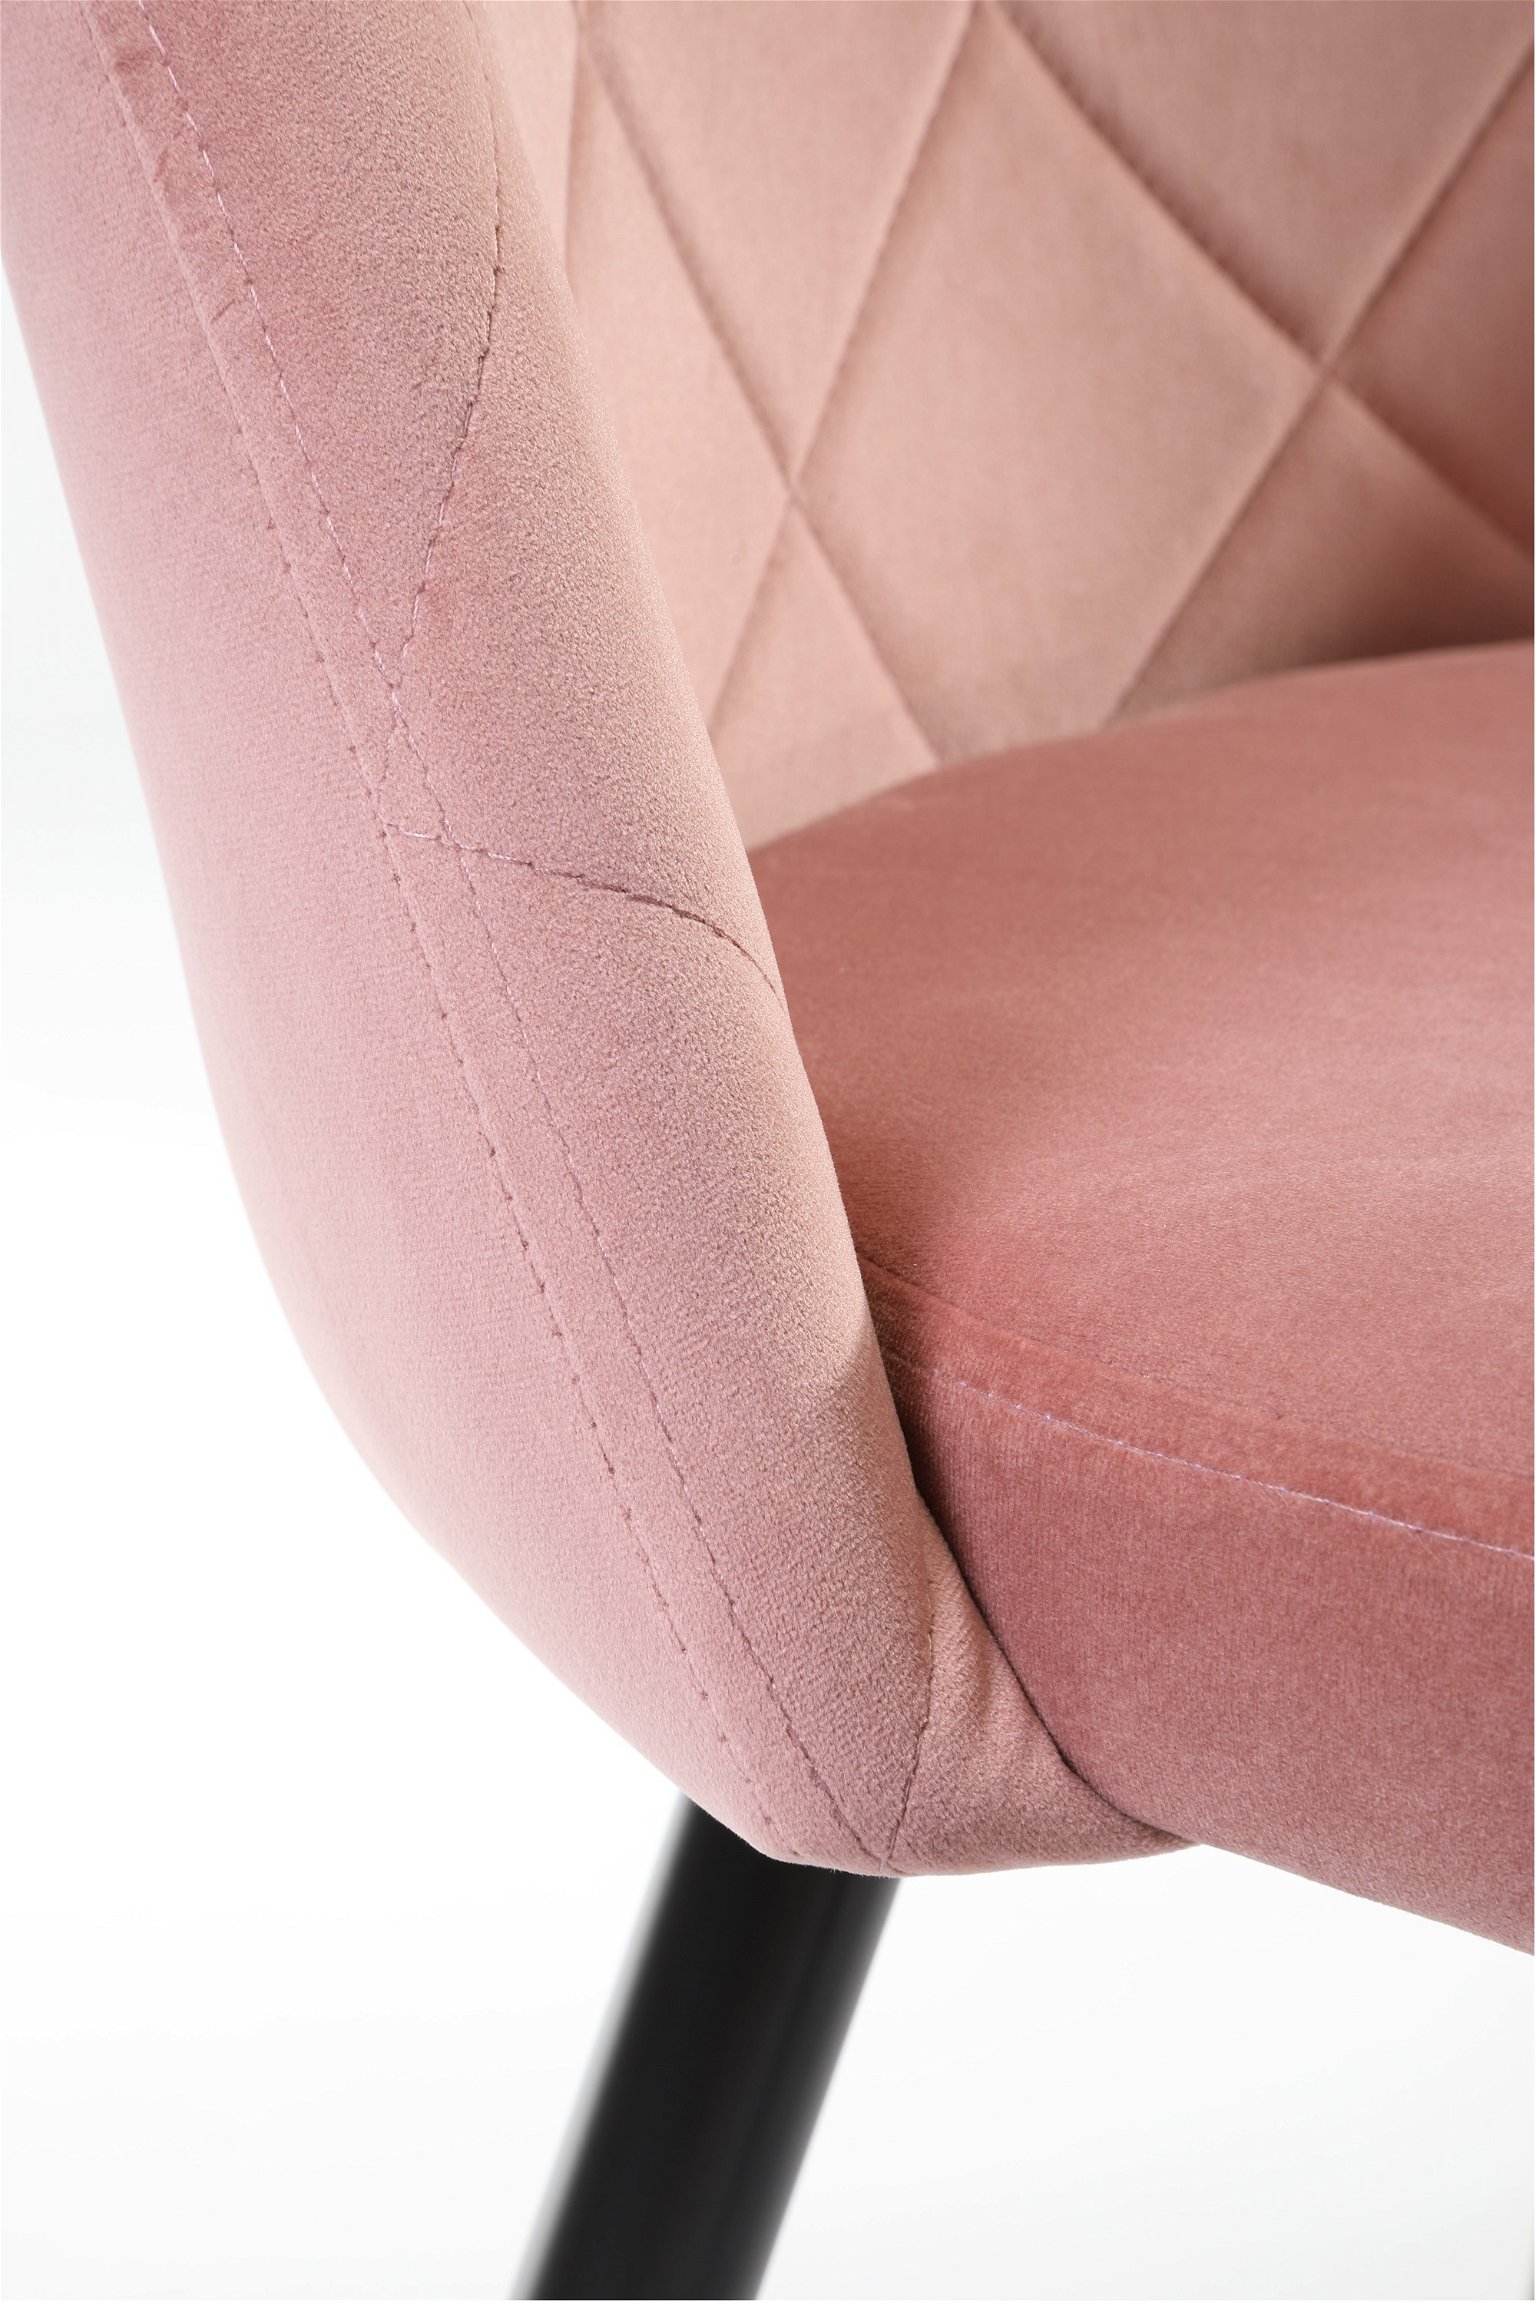 4-ių kėdžių komplektas SJ.077, rožinė - 5